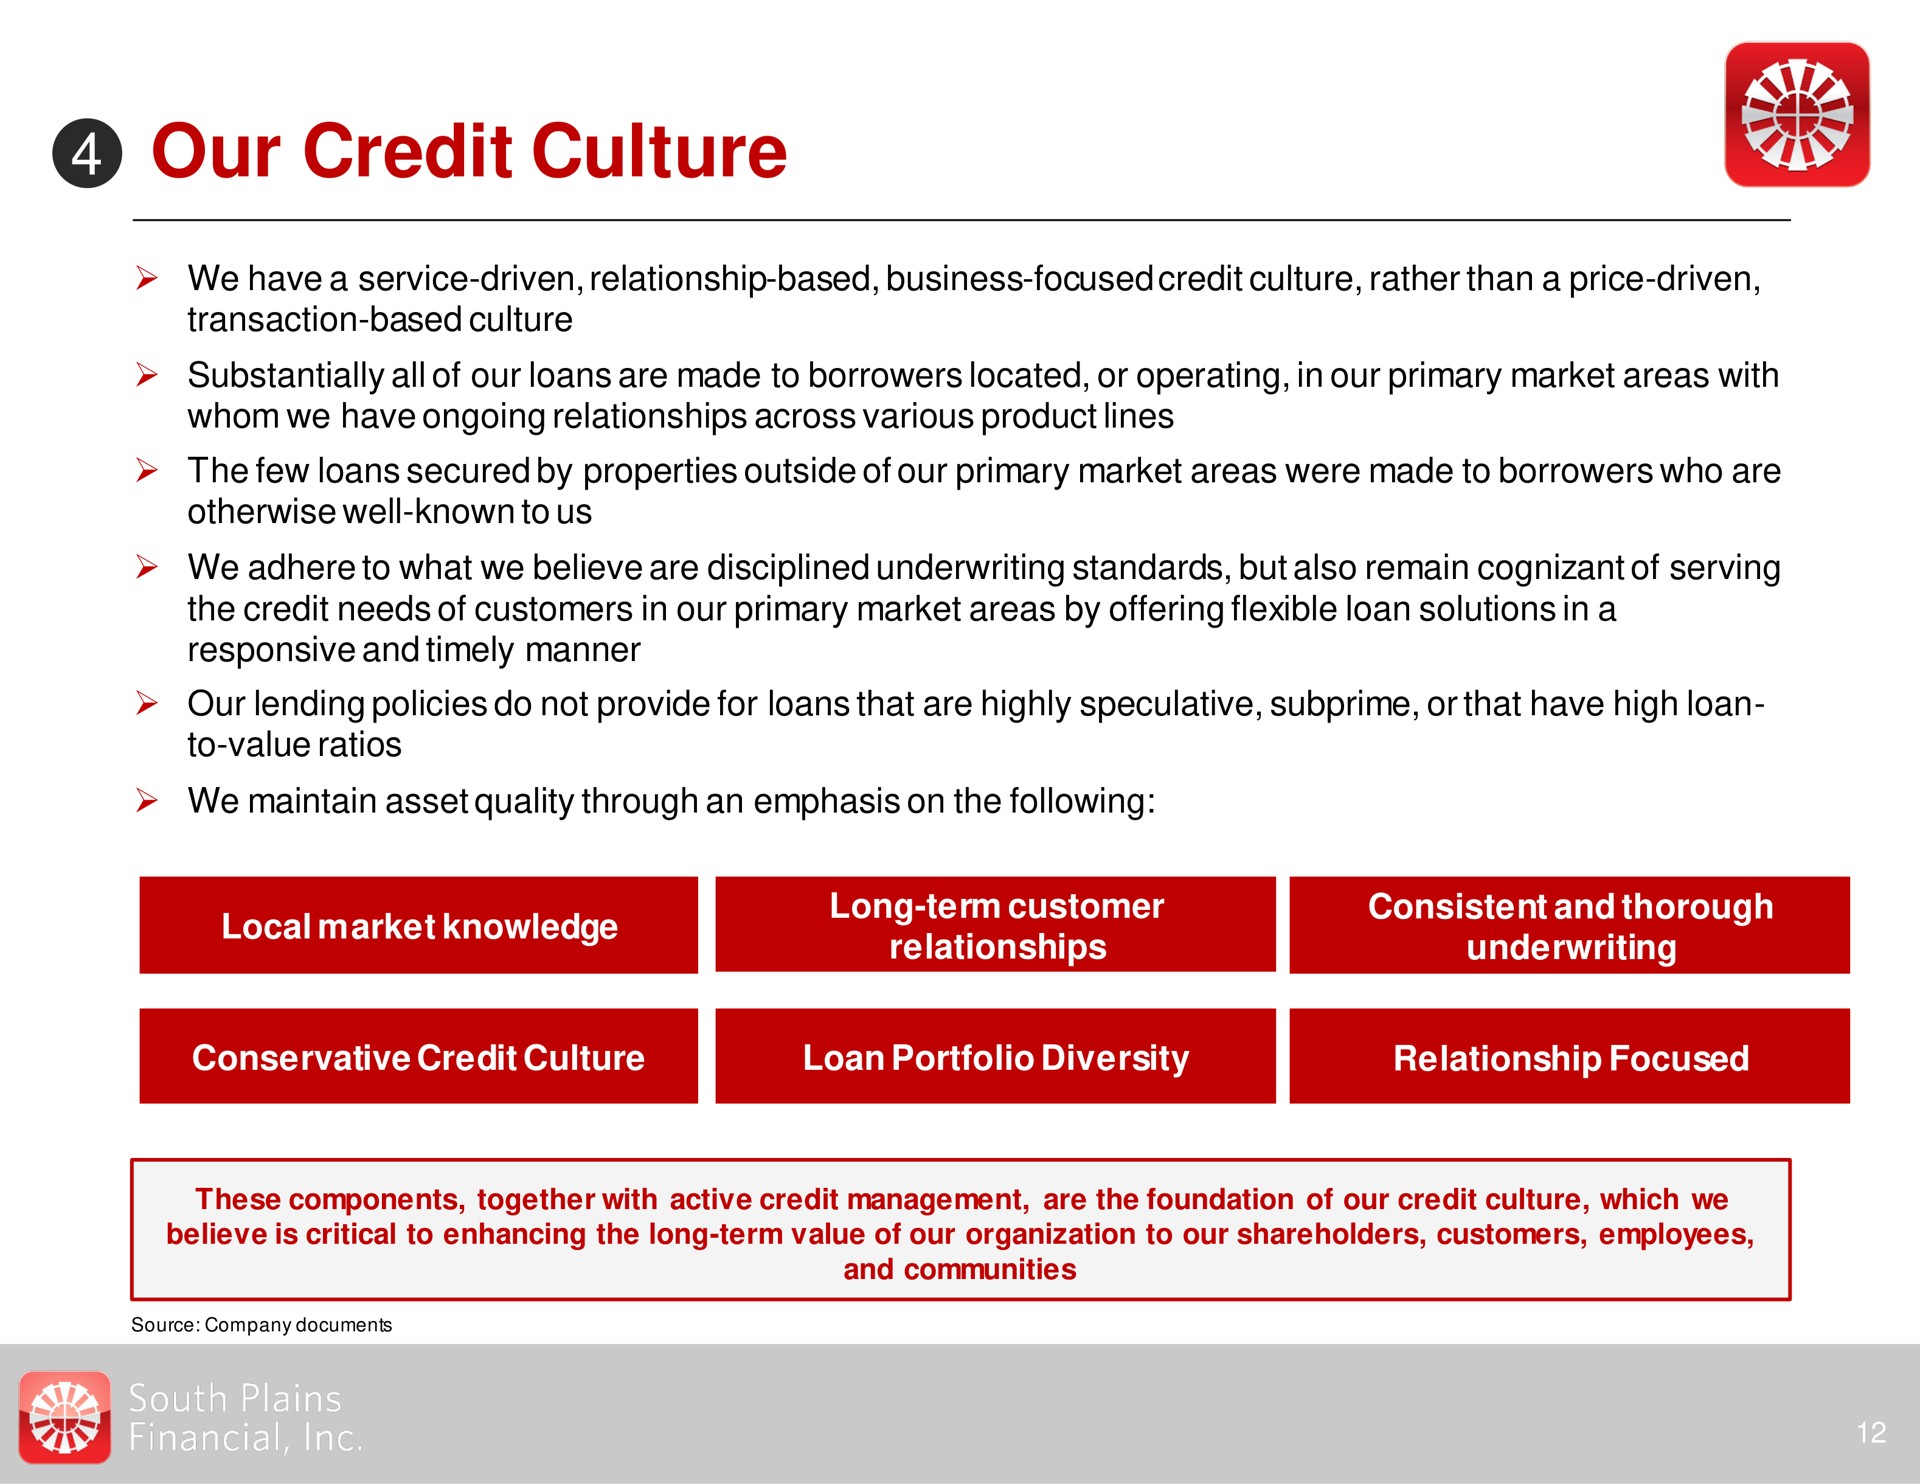 our credit culture | South Plains Financial